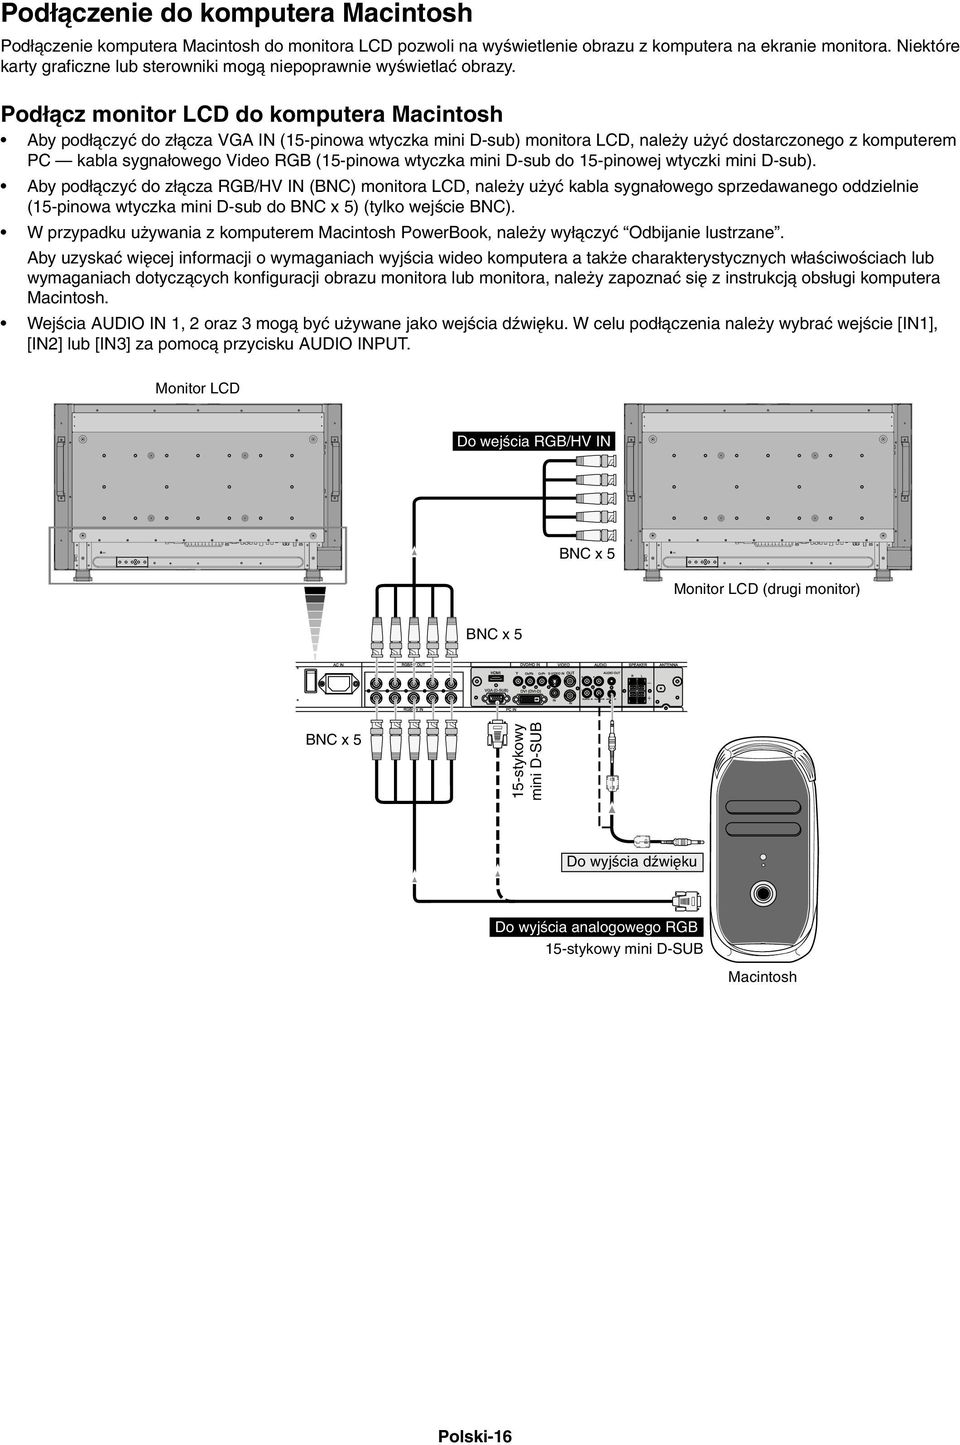 Pod àcz monitor LCD do komputera Macintosh Aby pod àczyç do z àcza VGA IN (15-pinowa wtyczka mini D-sub) monitora LCD, nale y u yç dostarczonego z komputerem PC kabla sygna owego Video RGB (15-pinowa